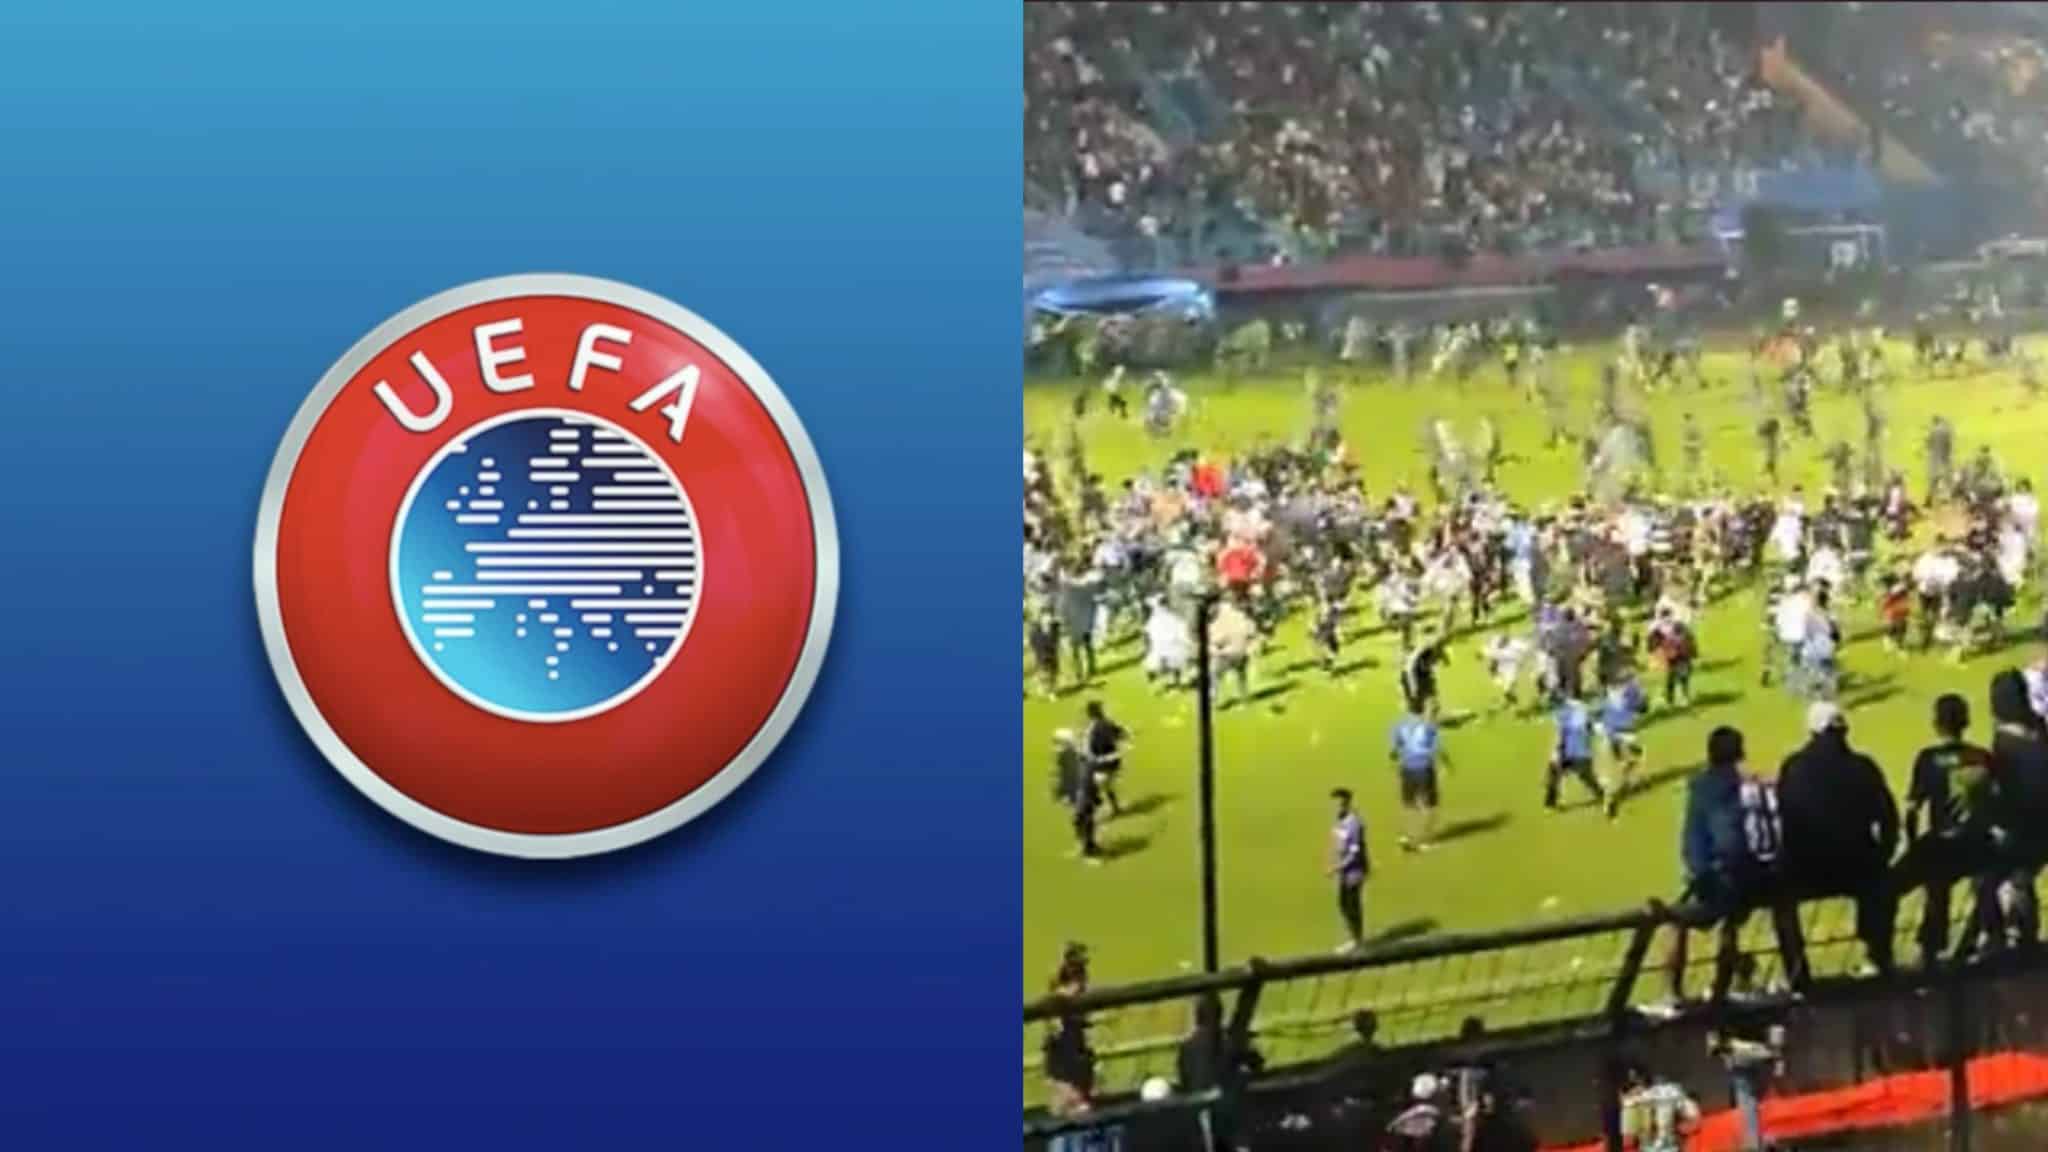 Tragédie en Indonésie, l&rsquo;UEFA annonce : 1 minute de silence avant chaque match de Coupe